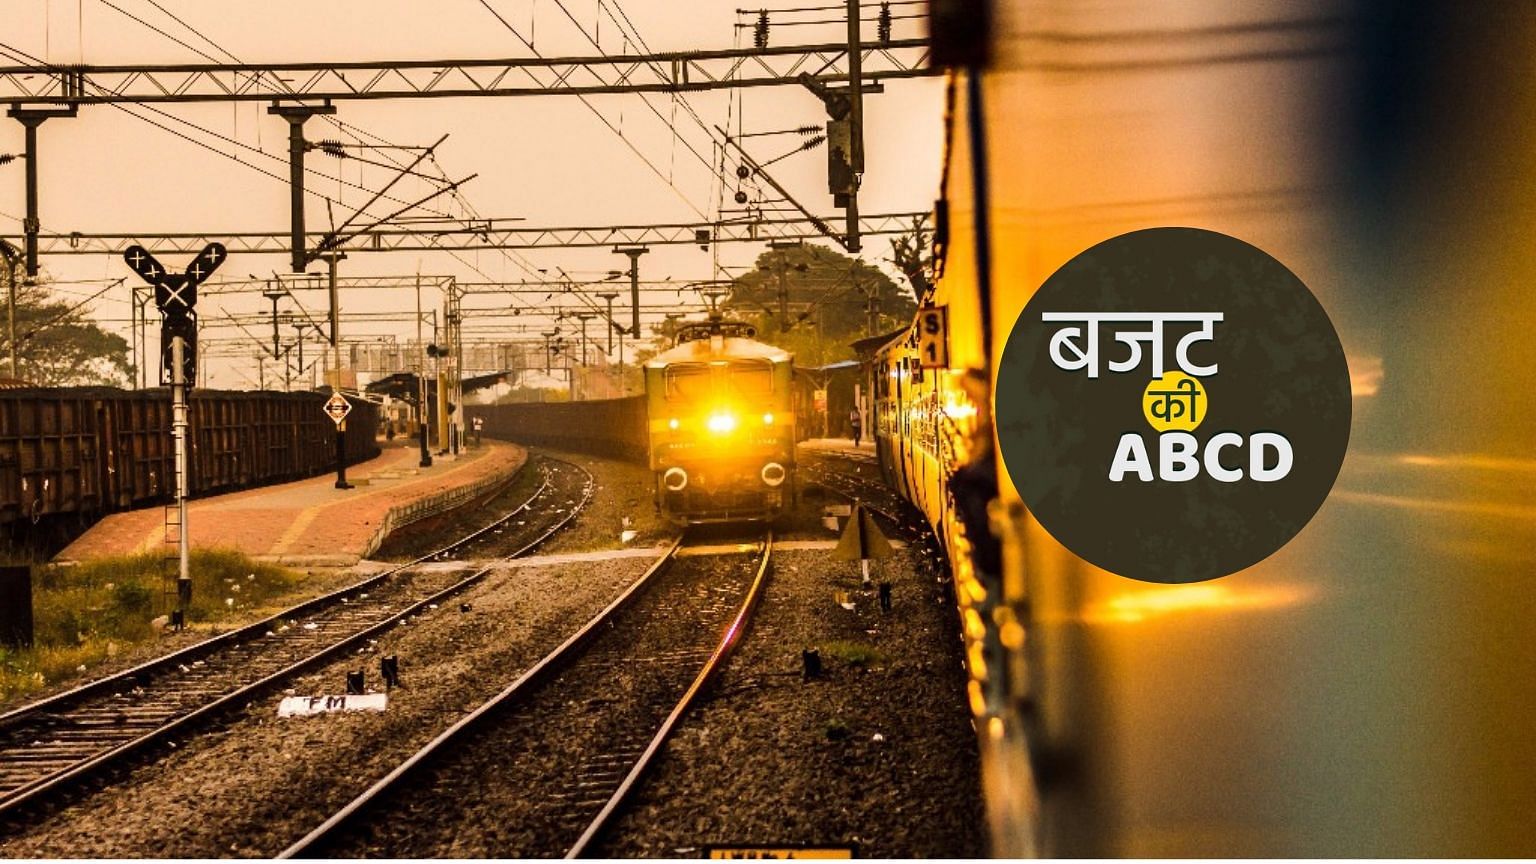 भारतीय रेल देश में सबसे बड़ी पब्लिक सेक्टर कंपनी है और इसमें करीब साढ़े तेरह लाख लोगों को रोजगार मिला हुआ है.